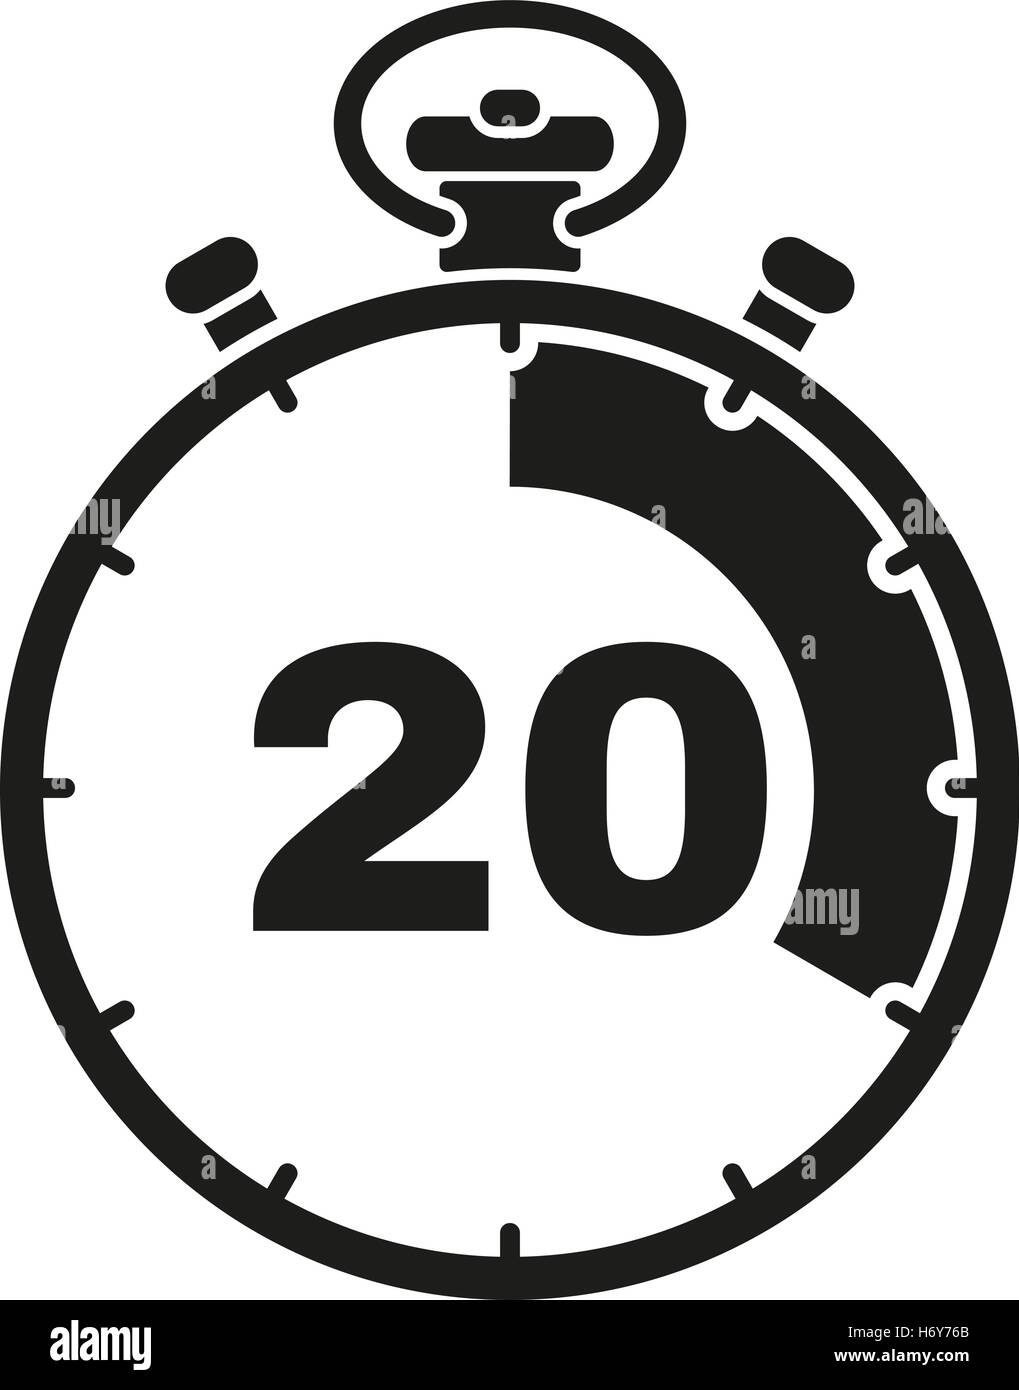 Icono De Reloj Con Intervalo De Tiempo De 20 Minutos. Temporizador